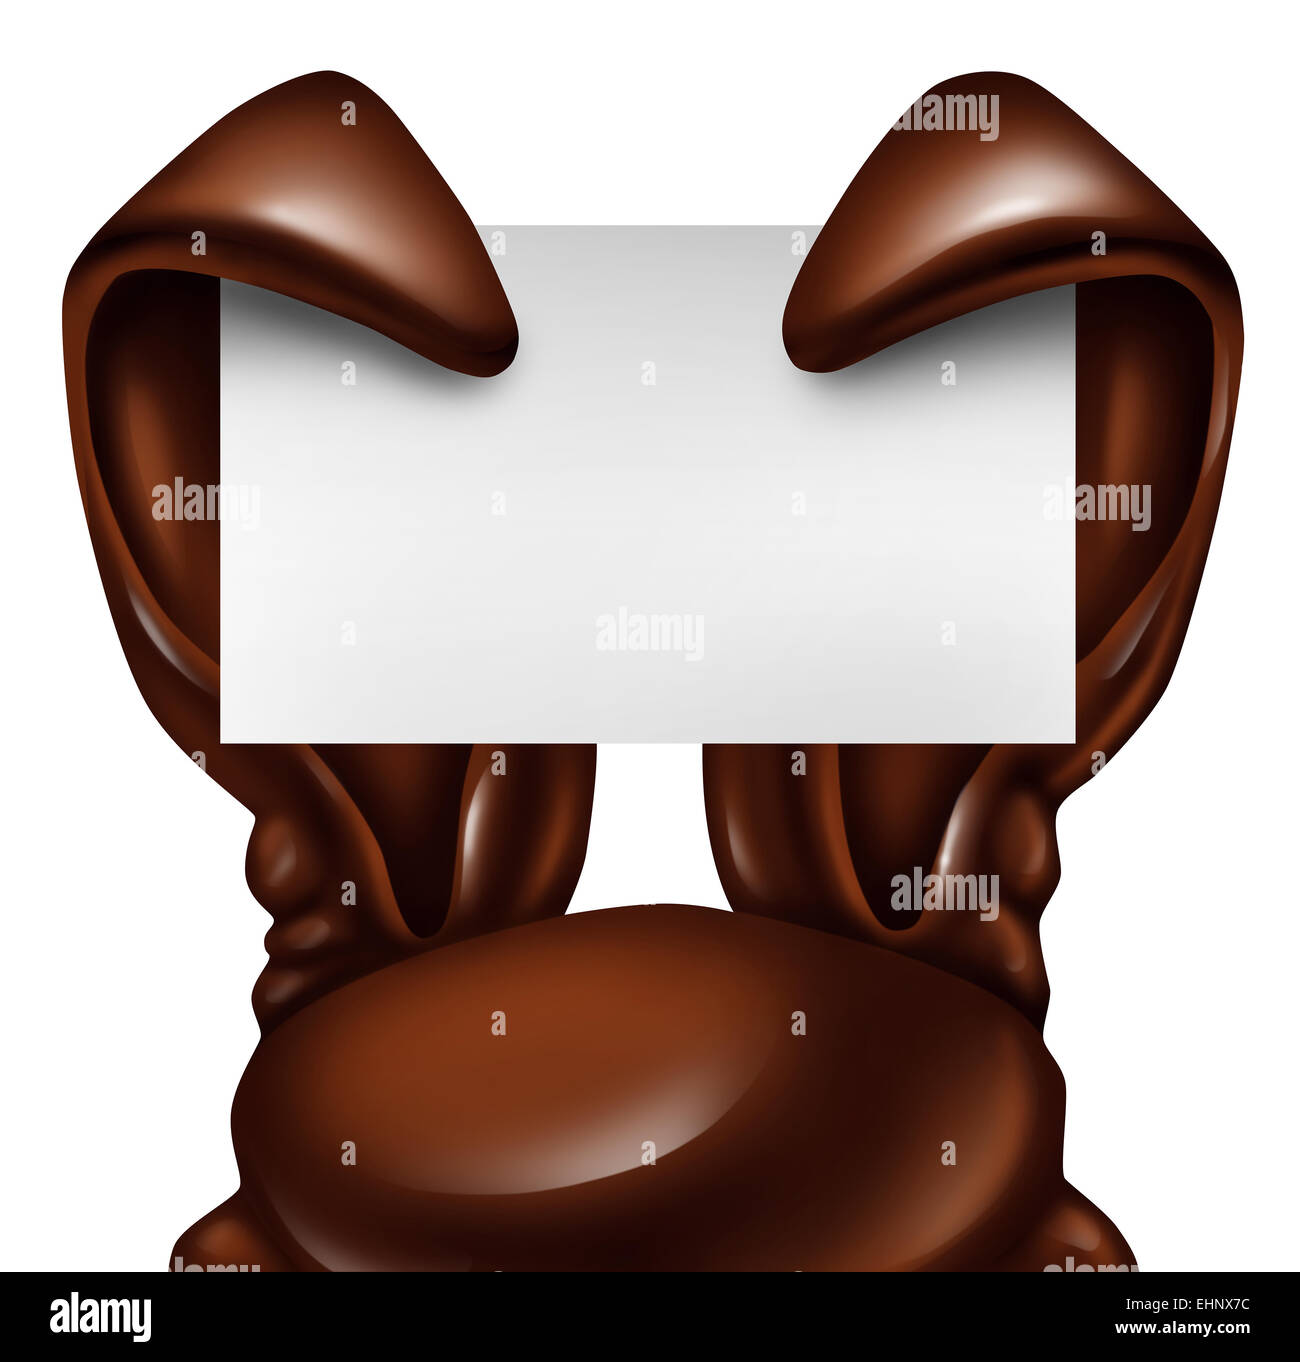 Ostern Schokolade Hase Zeichen als süßes Konfekt Ohren hielt eine leere Banner-Karte als ein lustiges Frühling Symbol für Urlaub Feier als Werbebotschaft auf einem weißen Hintergrund. Stockfoto